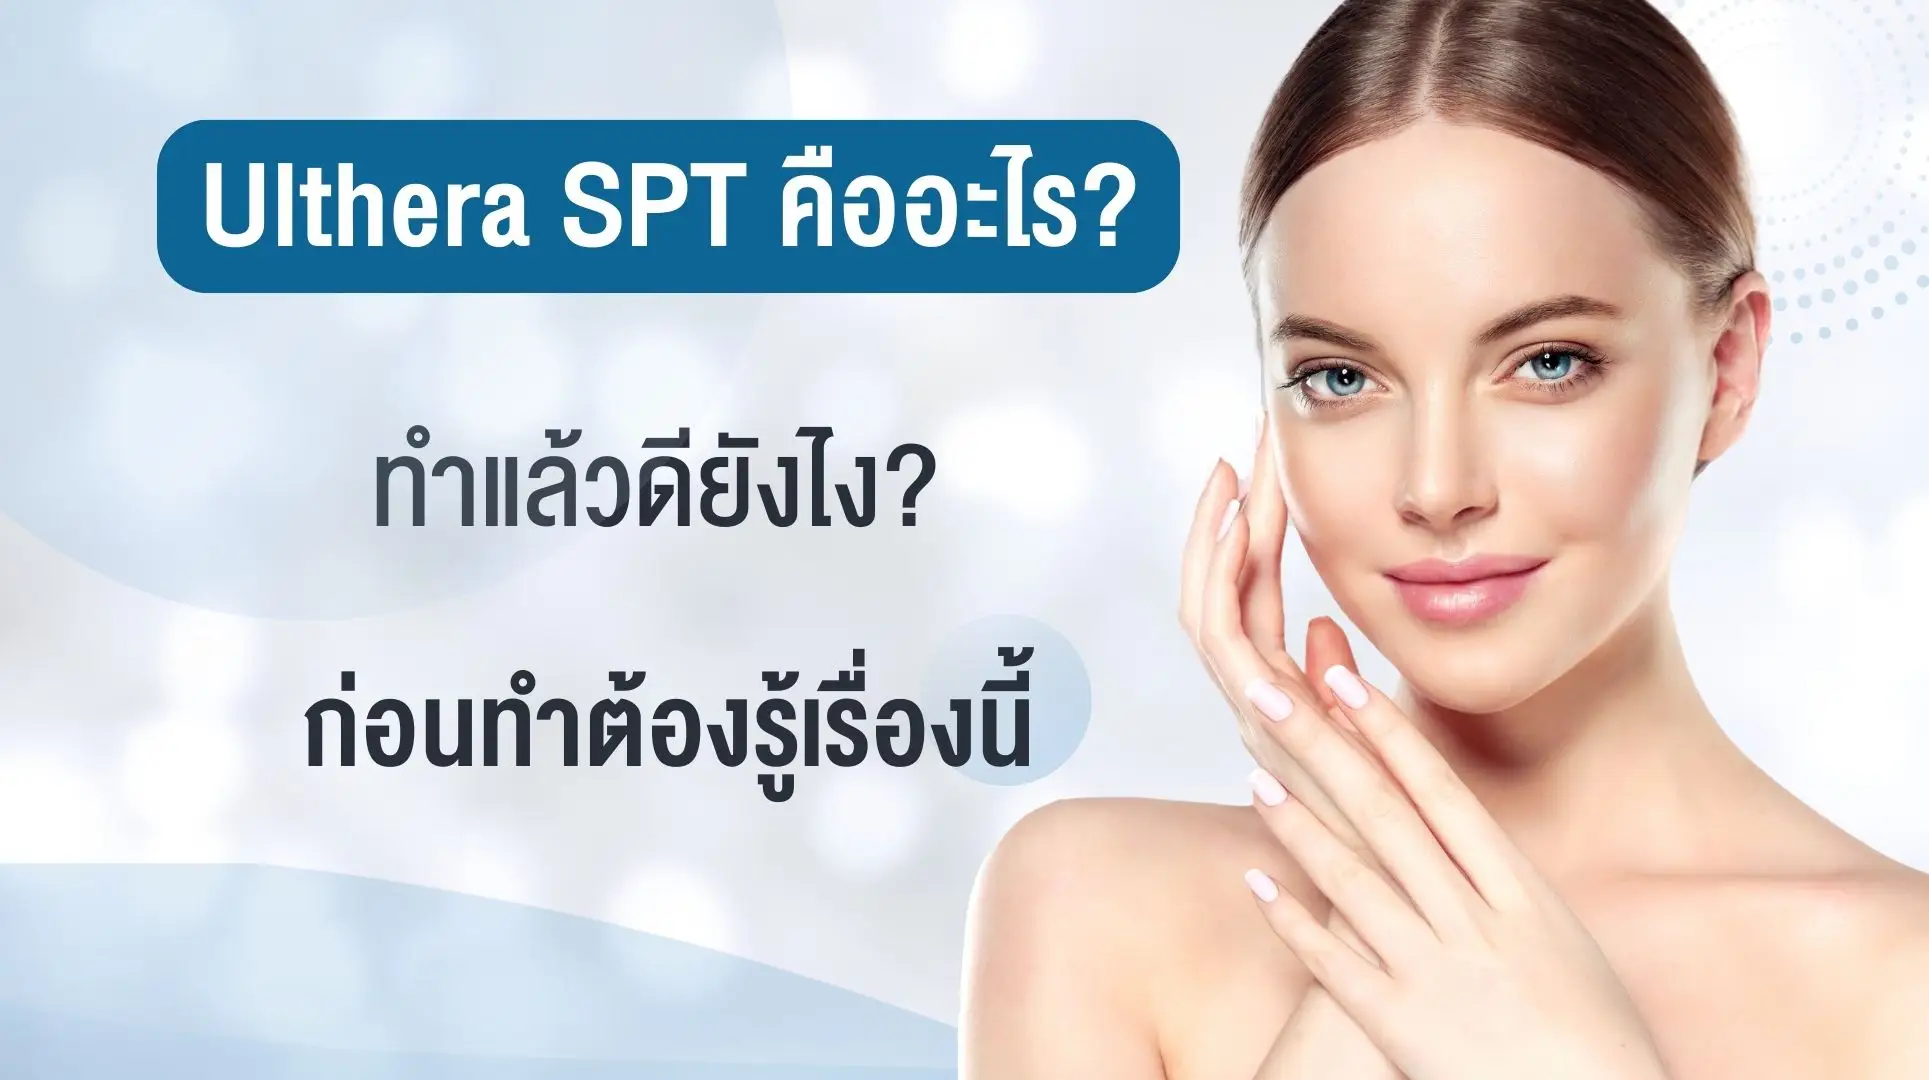 Ulthera SPT คืออะไร? ทำแล้วดียังไง? ก่อนทำต้องรู้เรื่องนี้